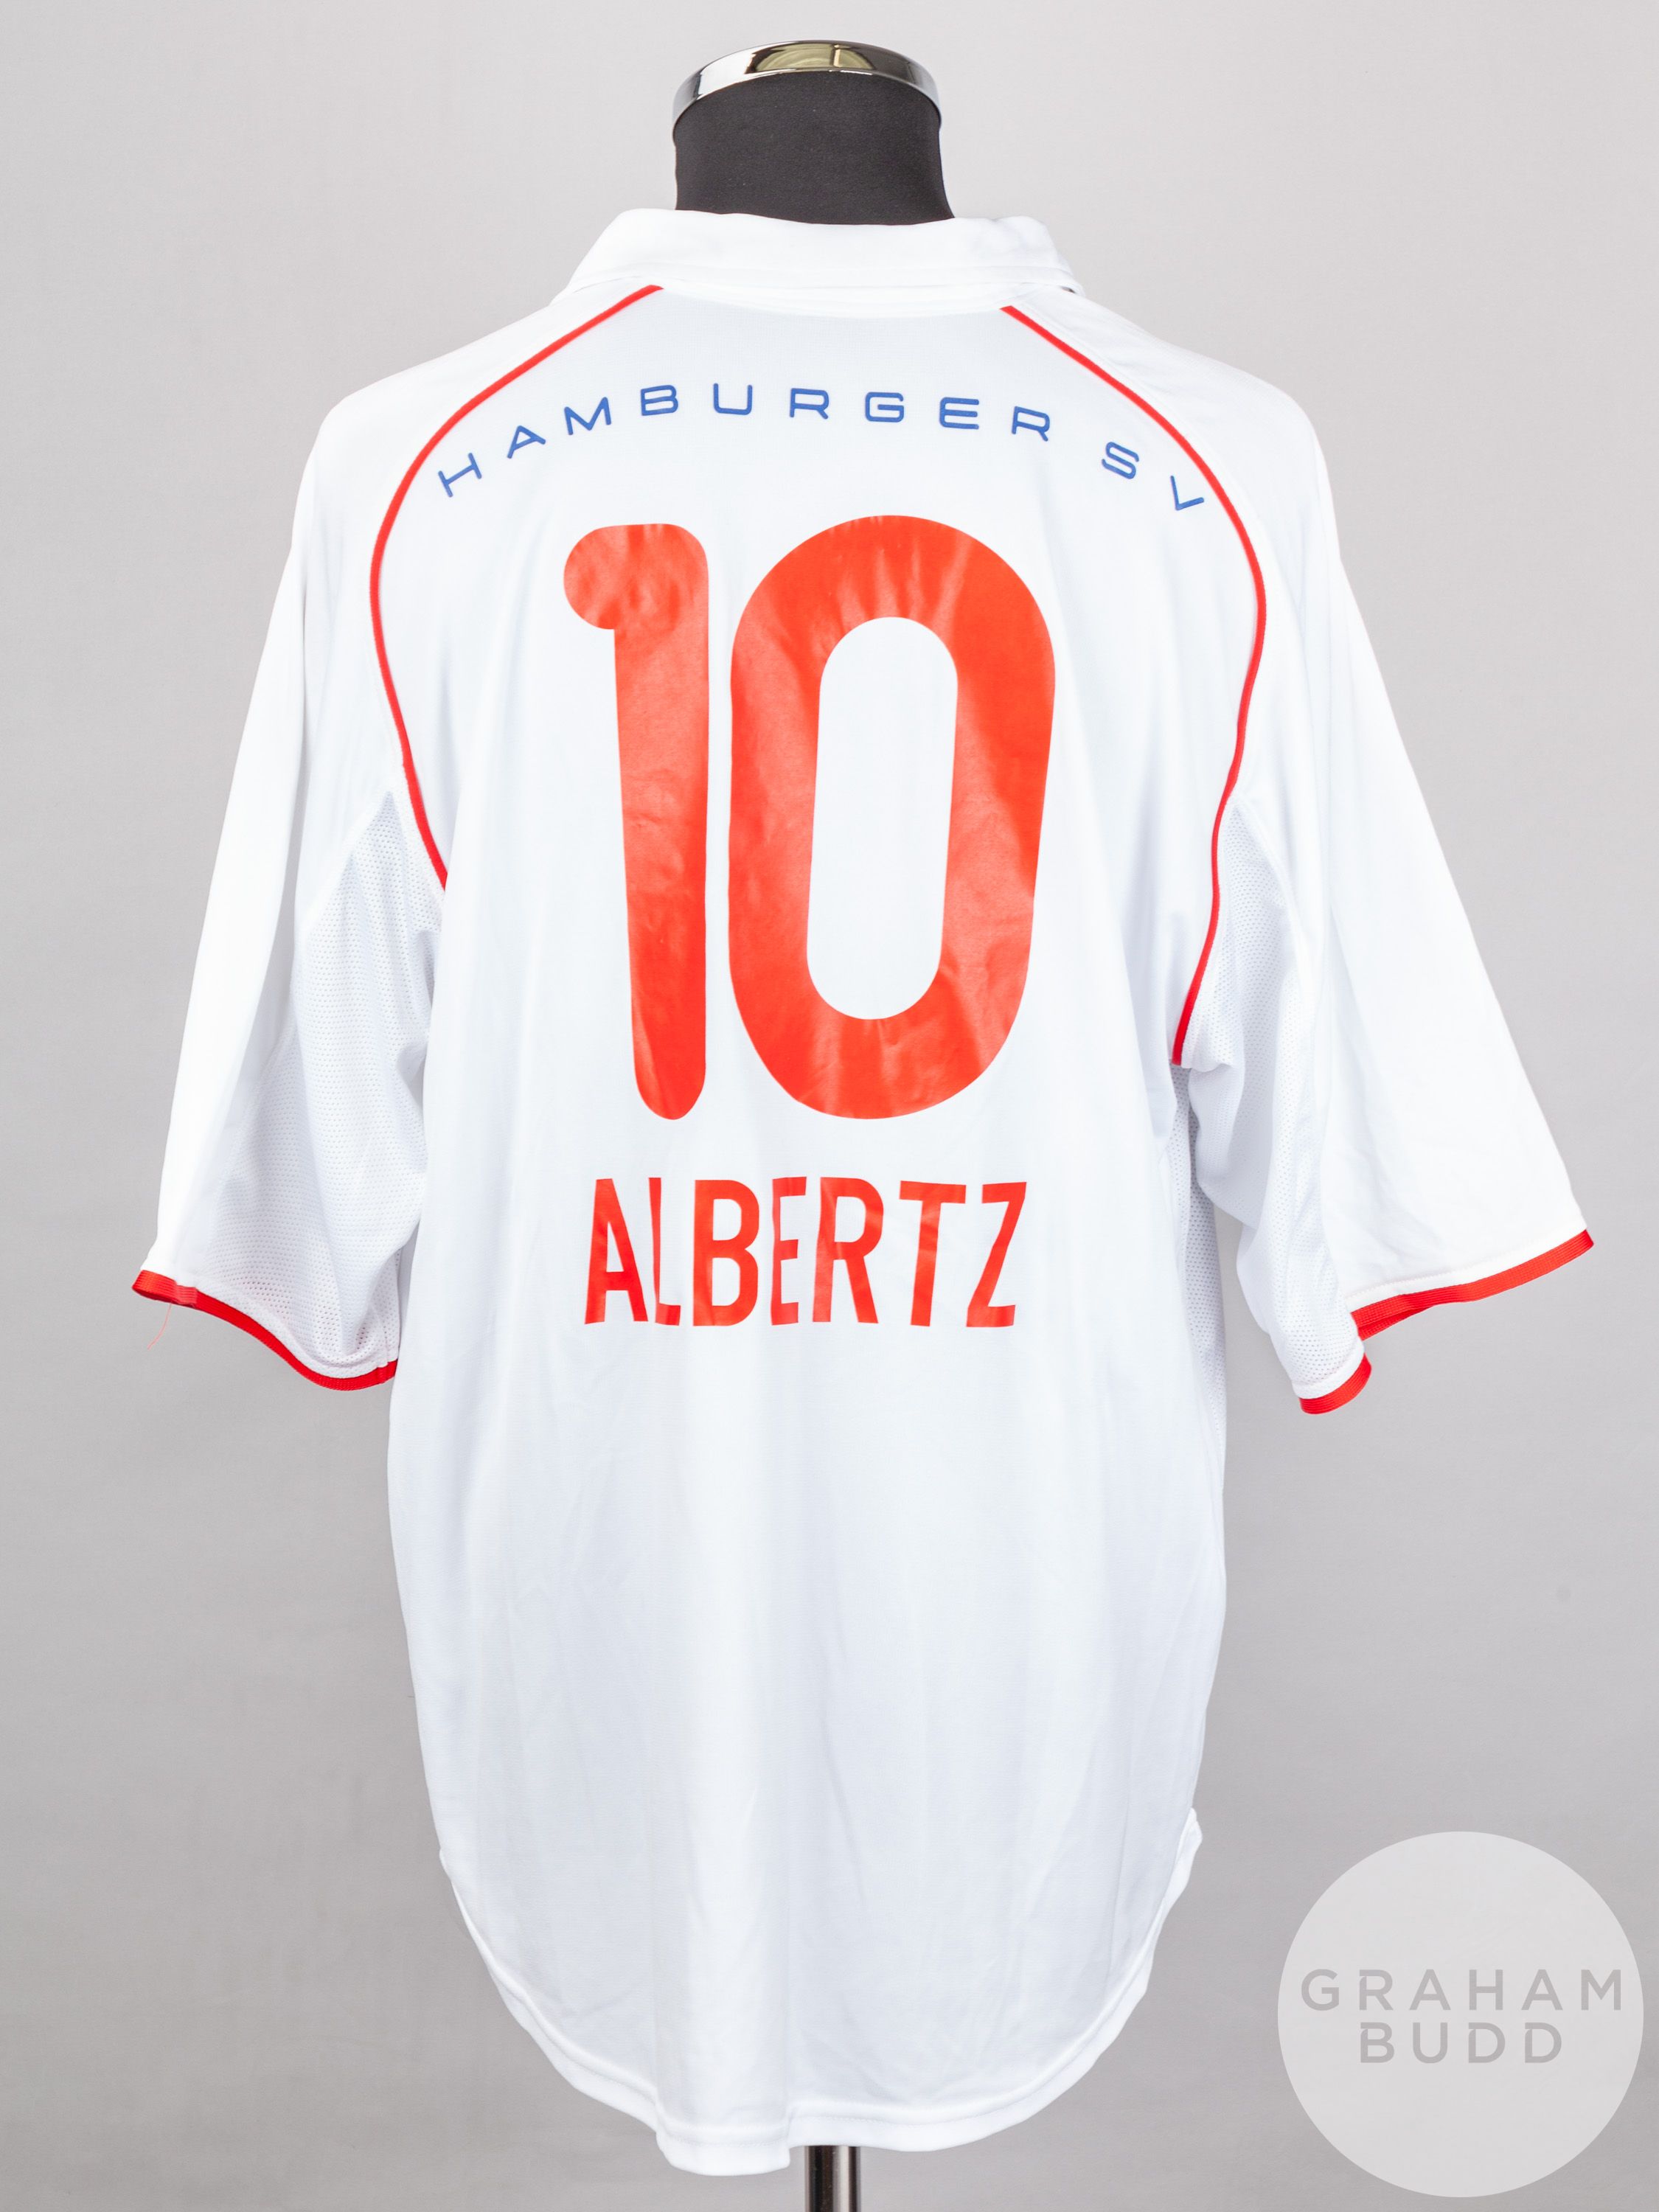 Jorg Albertz white and red No.10 Hamburg short-sleeved shirt, 2001-02 - Image 2 of 5